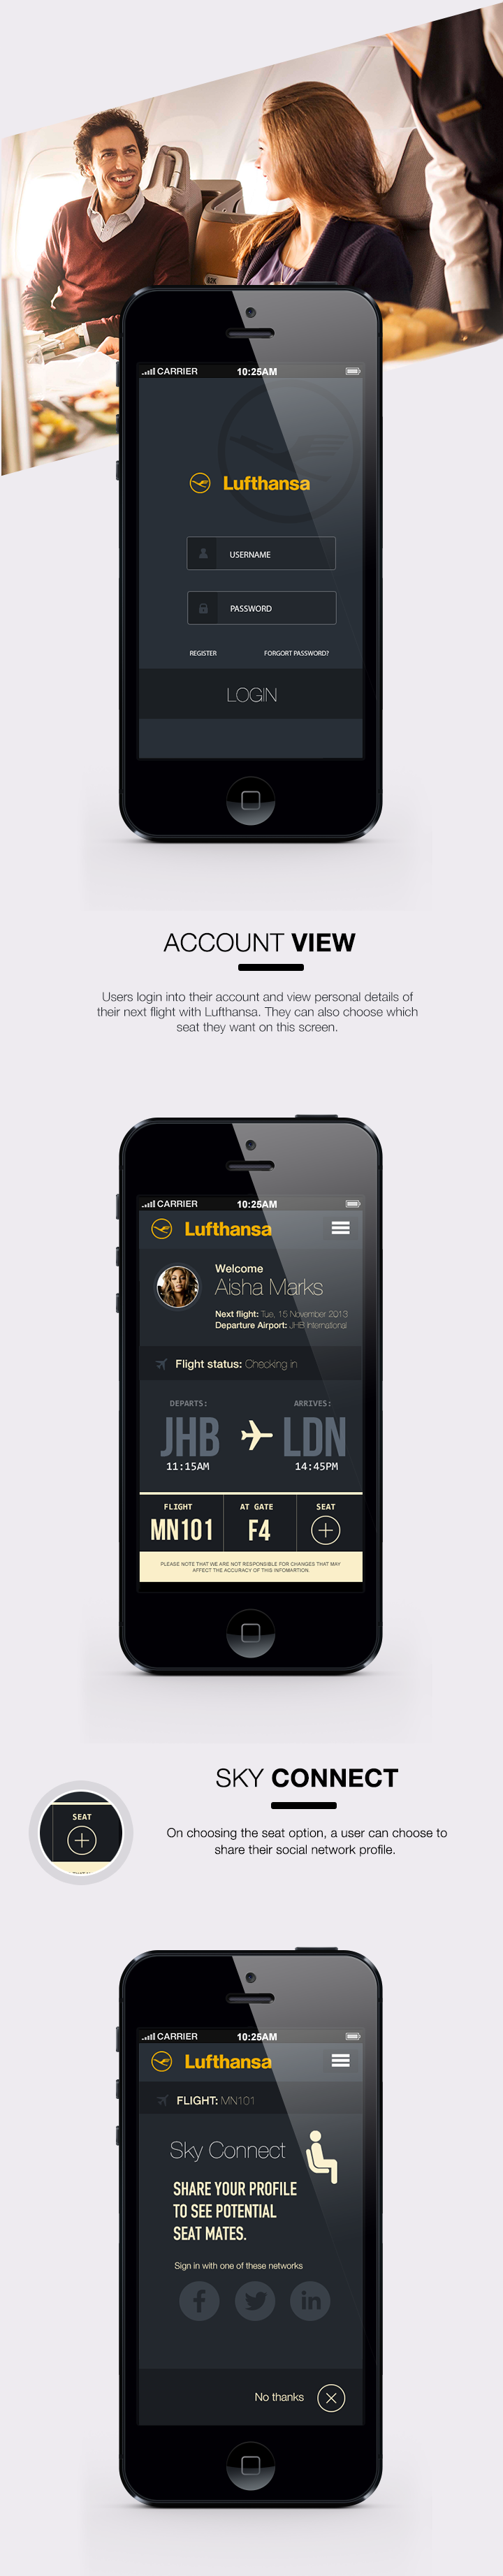 iOS 7 ios7 iphone Lufthansa Flying airline Airways UI ux UX design